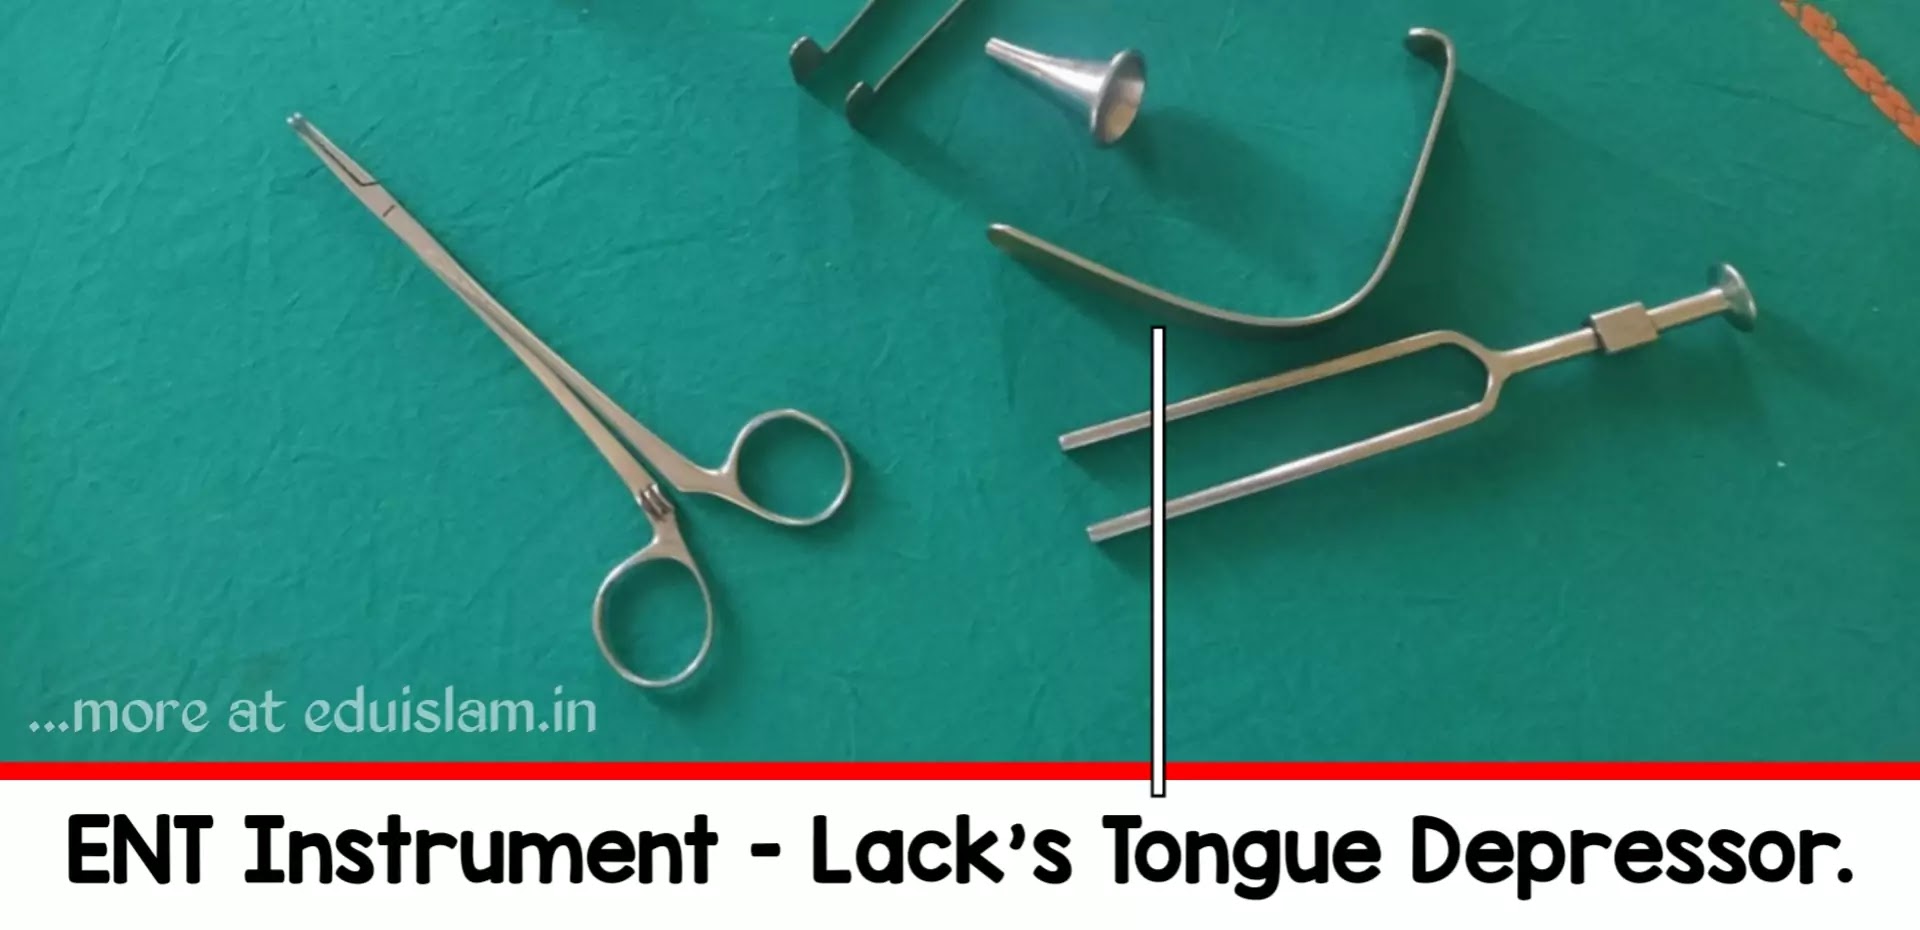 Lack's tongue depressor